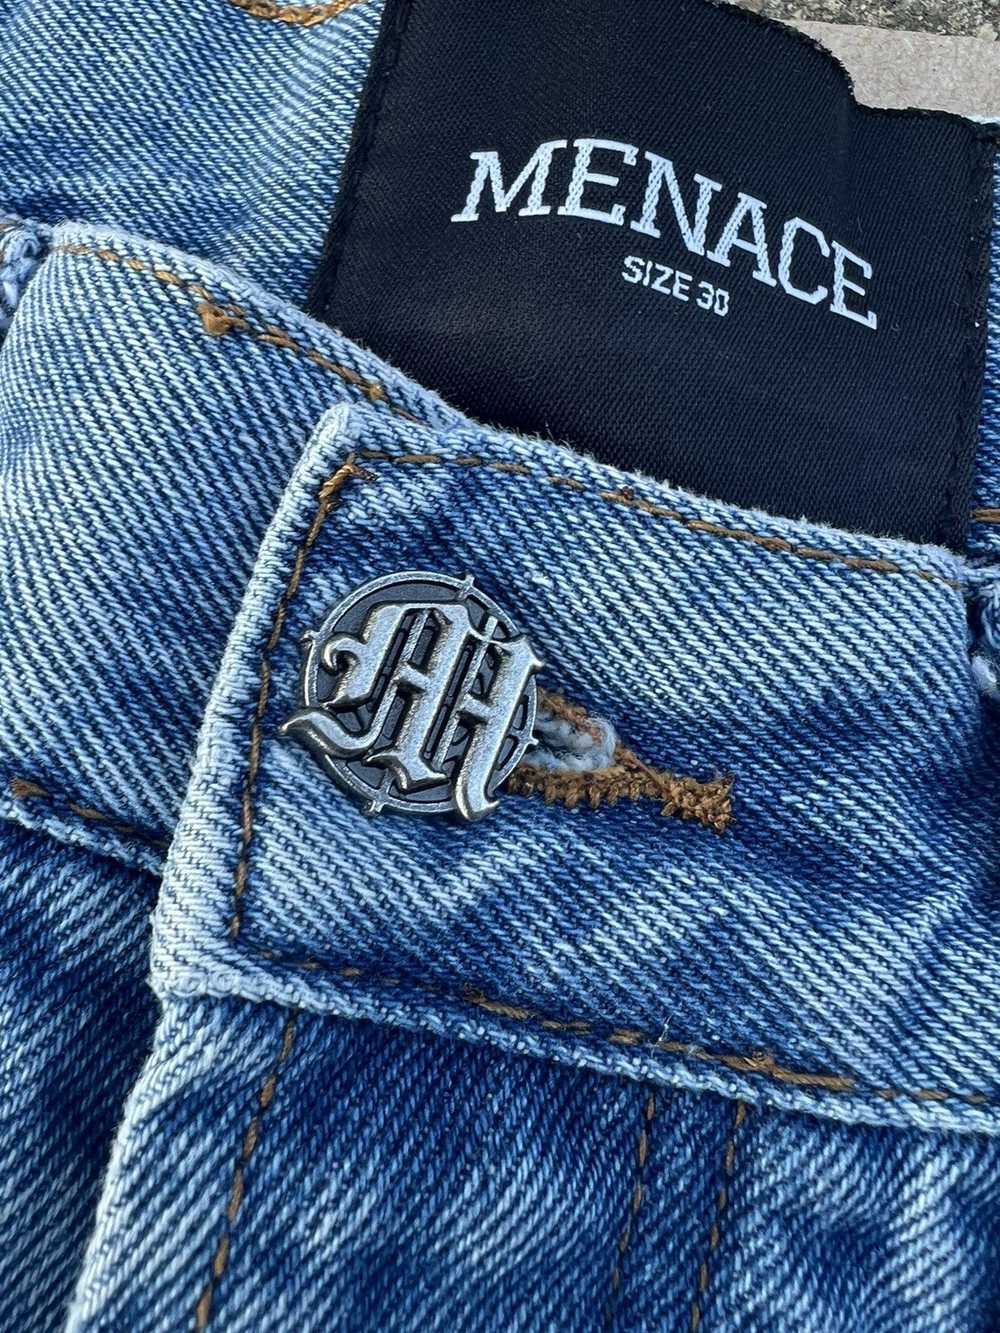 Menace Menace M Embossed Denim Jeans - image 5